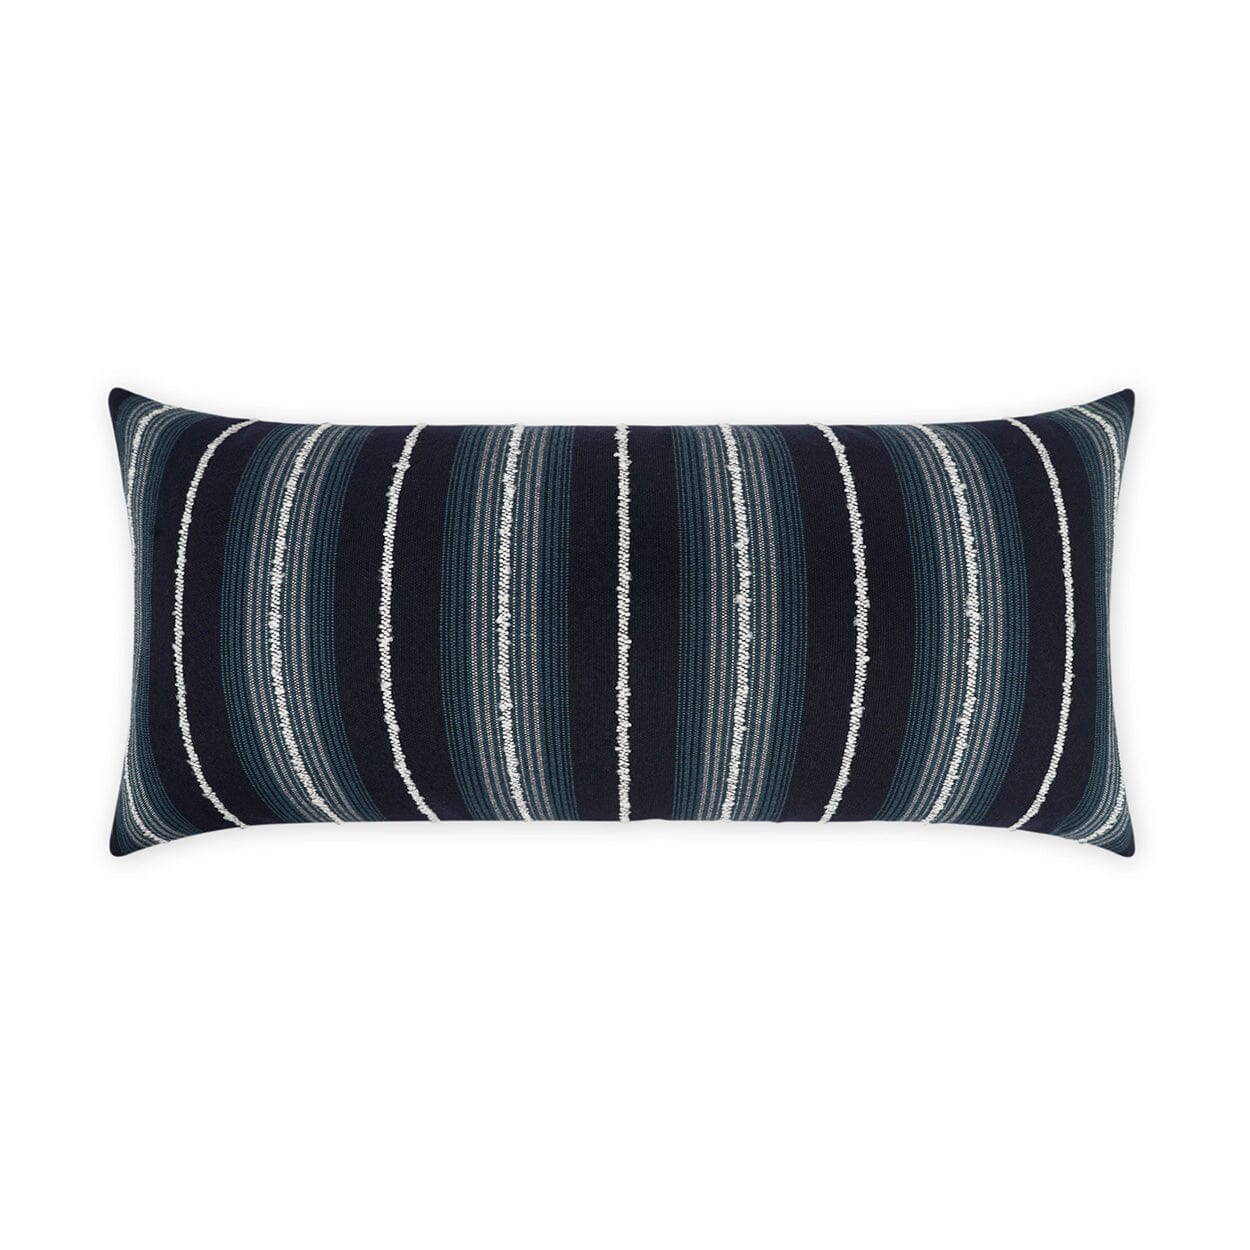 D.V. Kap 12" x 24" Outdoor Lumbar Pillow| Sunkist Blue Pillows D.V Kap Home